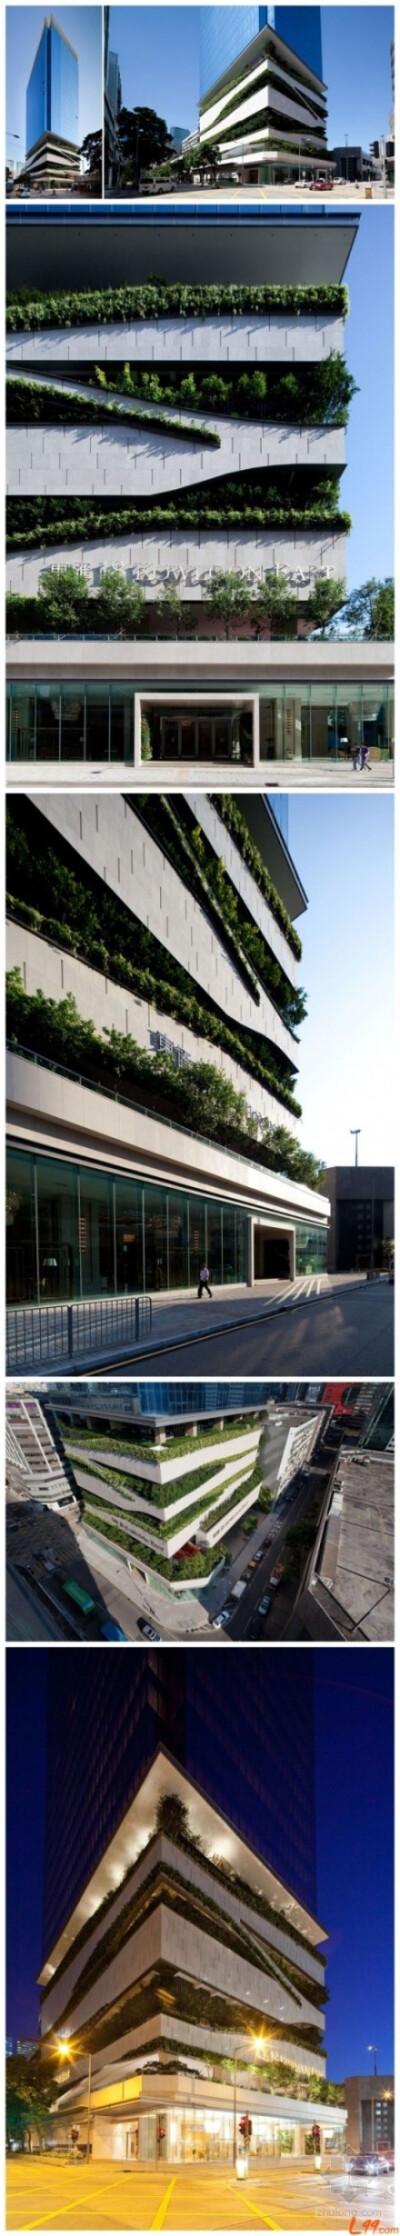 “绿化”是大楼的设计主题，其外立面以绿化元素为设计特色，大楼低层部分的停车场楼层提供大量绿化。此区曾一度是制造业集中地，而大楼位于工业大厦林立的社区中，在设计上着重绿化效果，为邻近地区带来清新的绿意，…